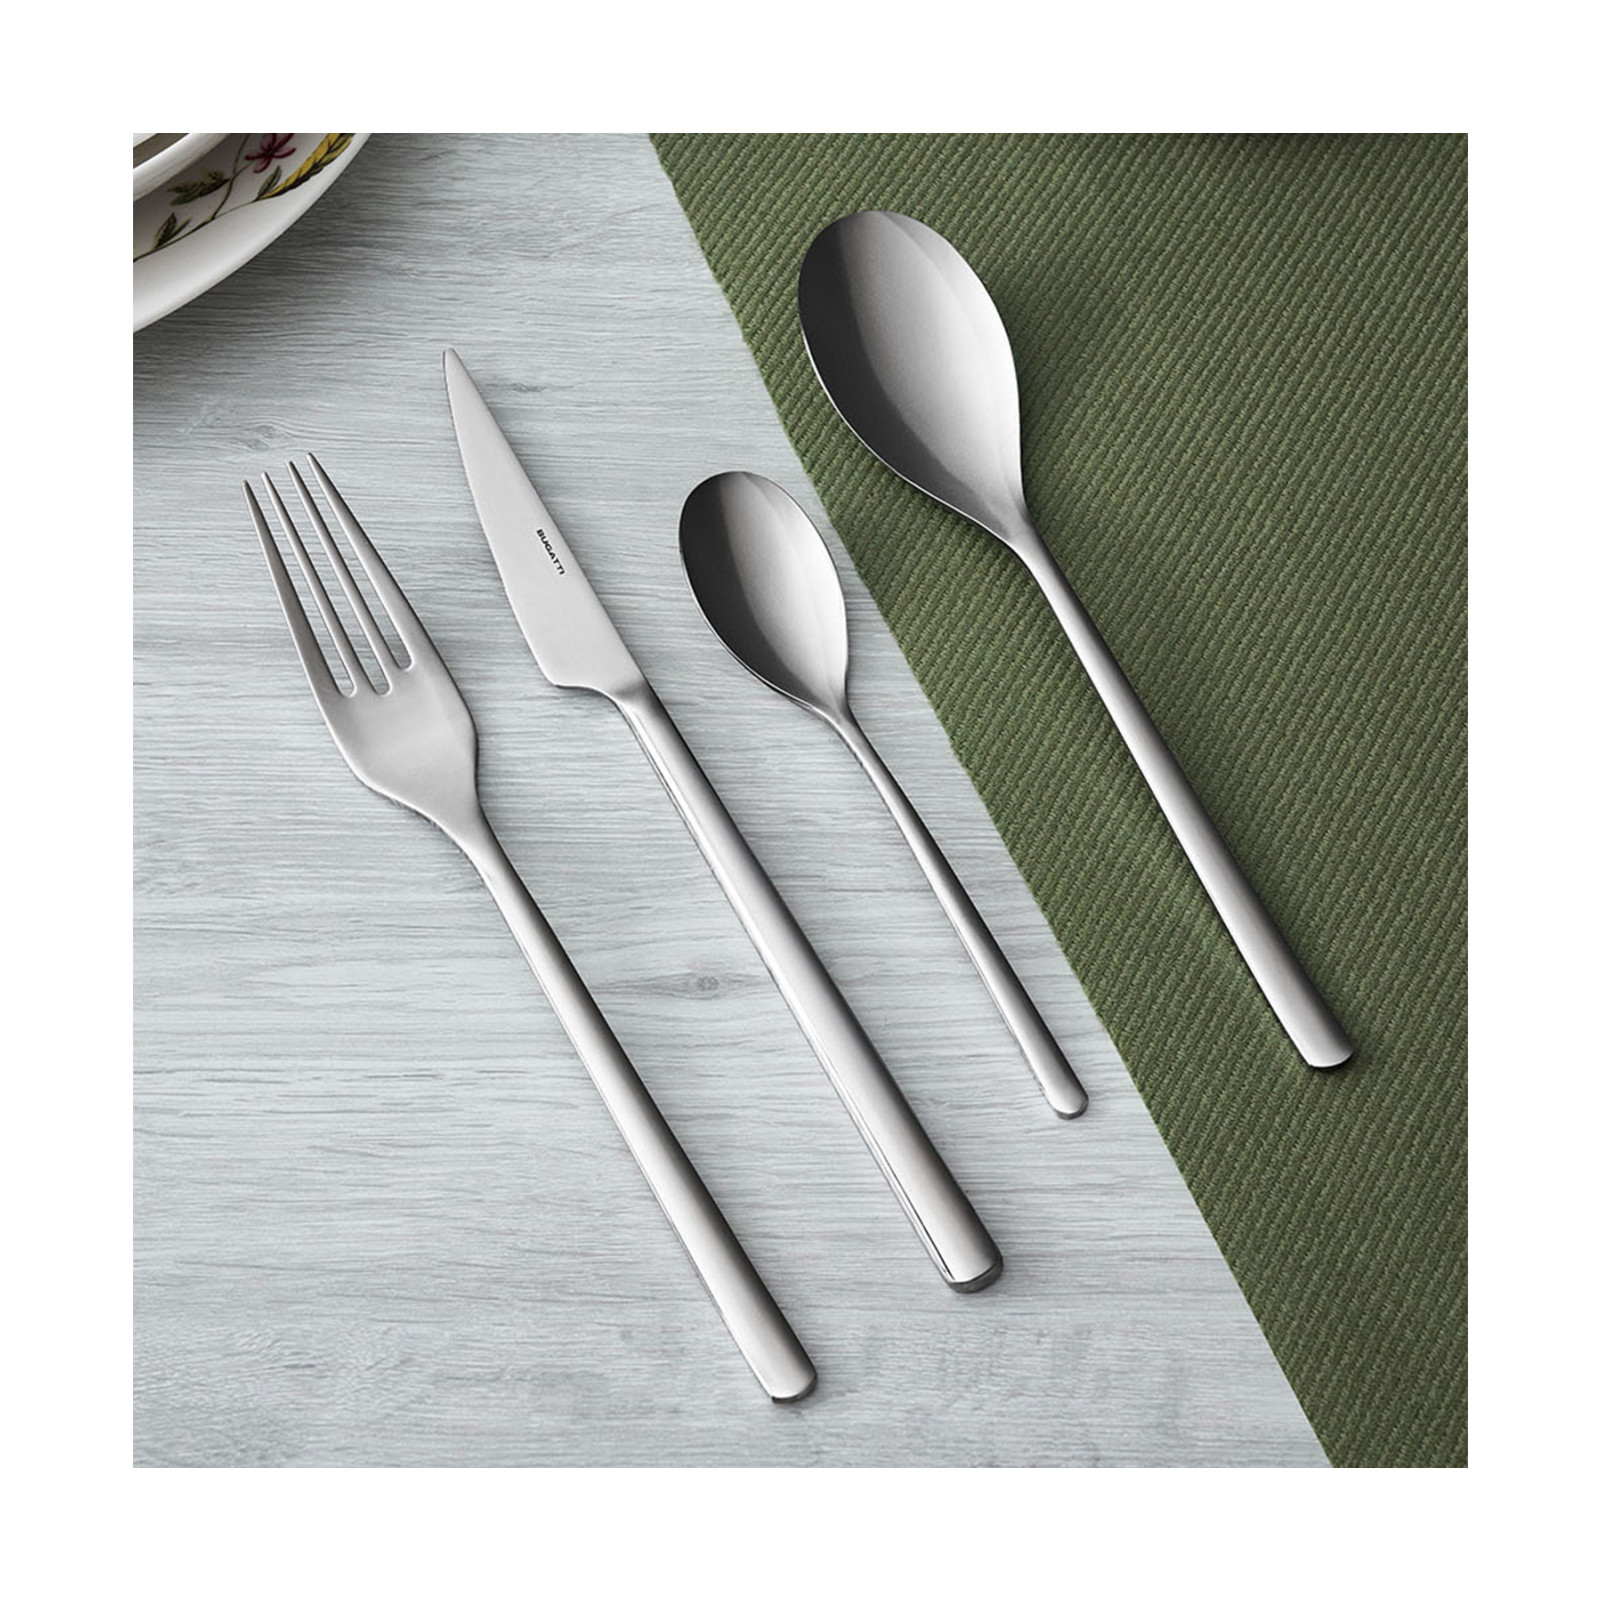 Bugatti - Designer cutlery, and appliances accessories kitchen small home